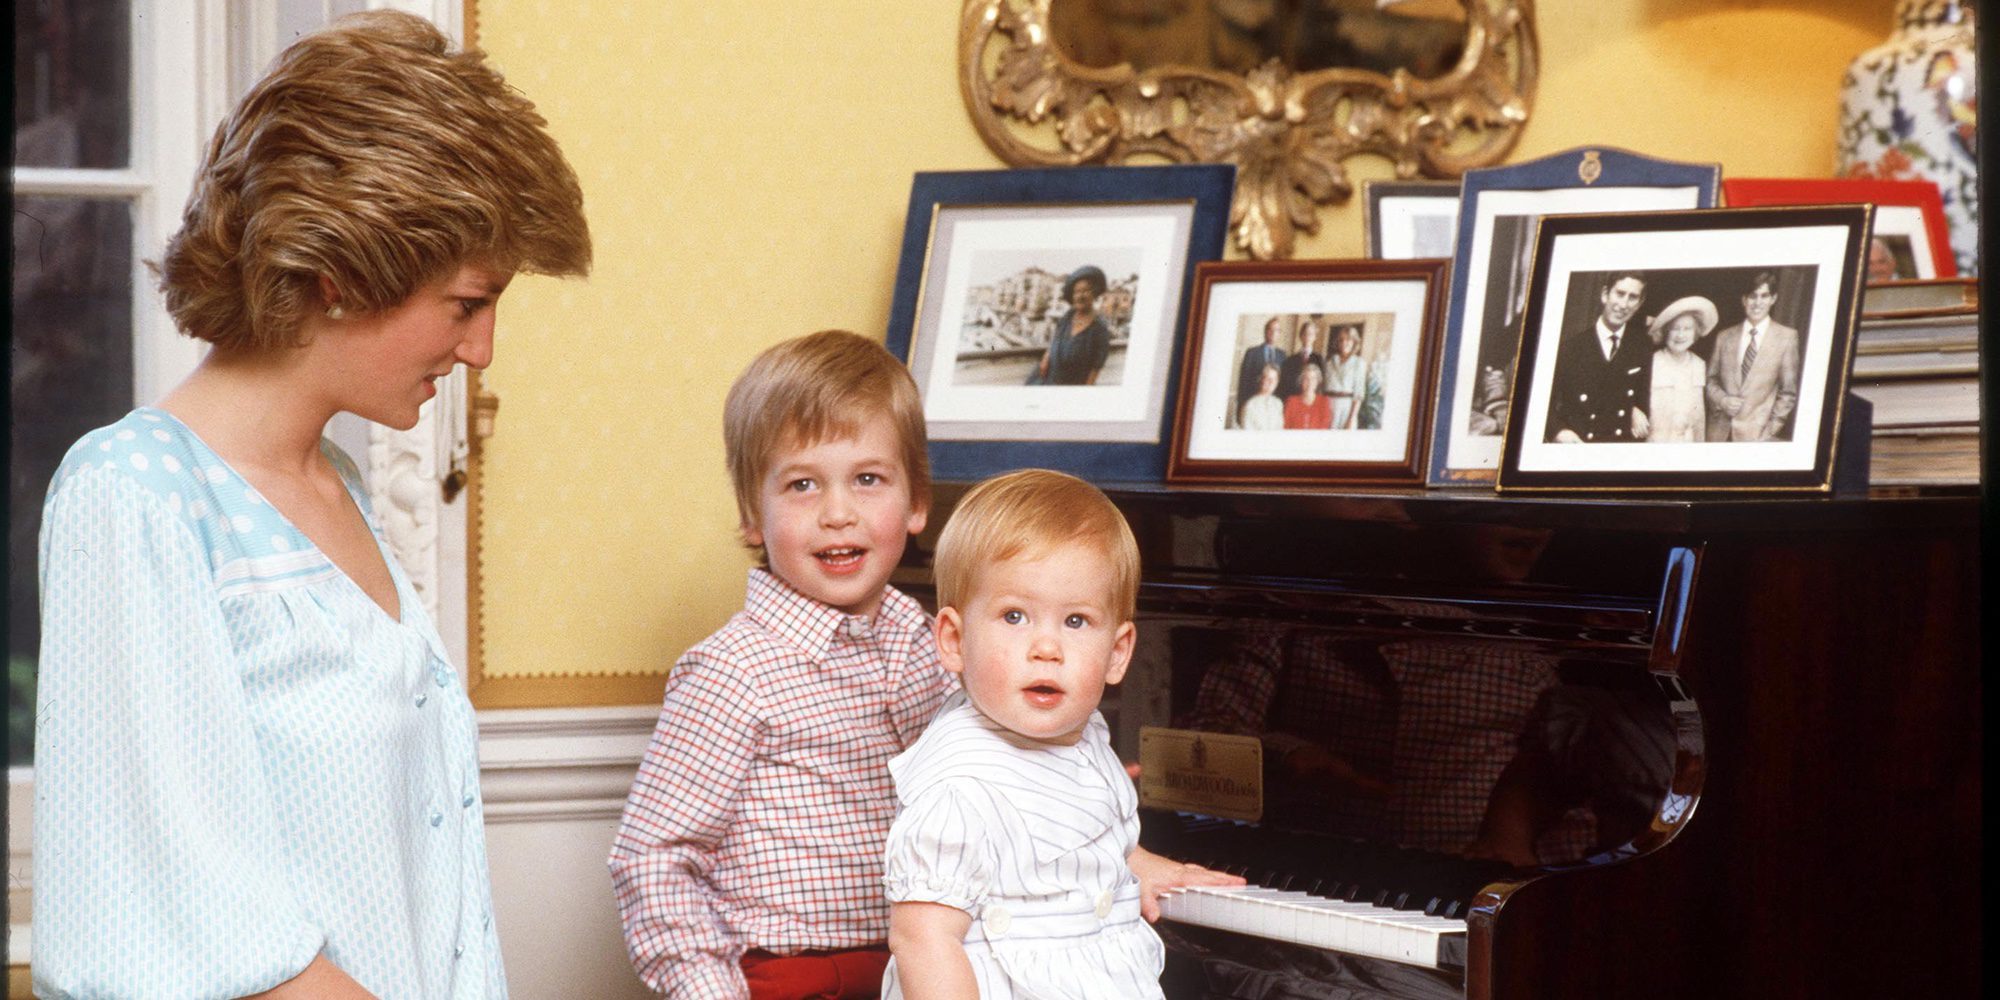 TVE emitirá el documental 'Diana, nuestra madre' en el 20 aniversario de la muerte de Lady Di